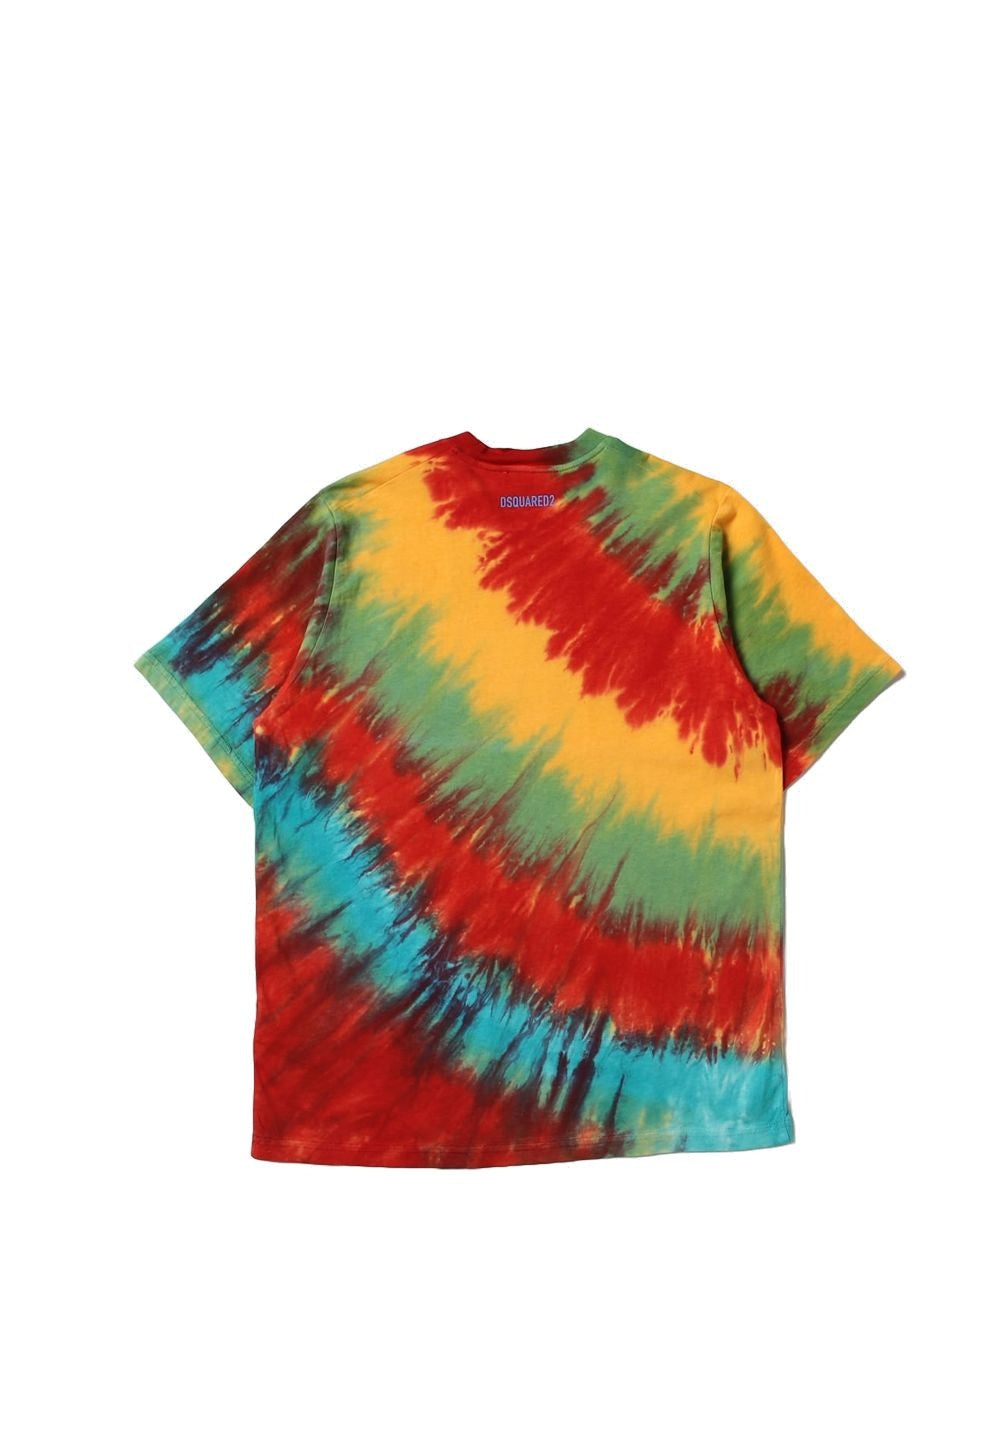 T-shirt multicolor per bambino - Primamoda kids